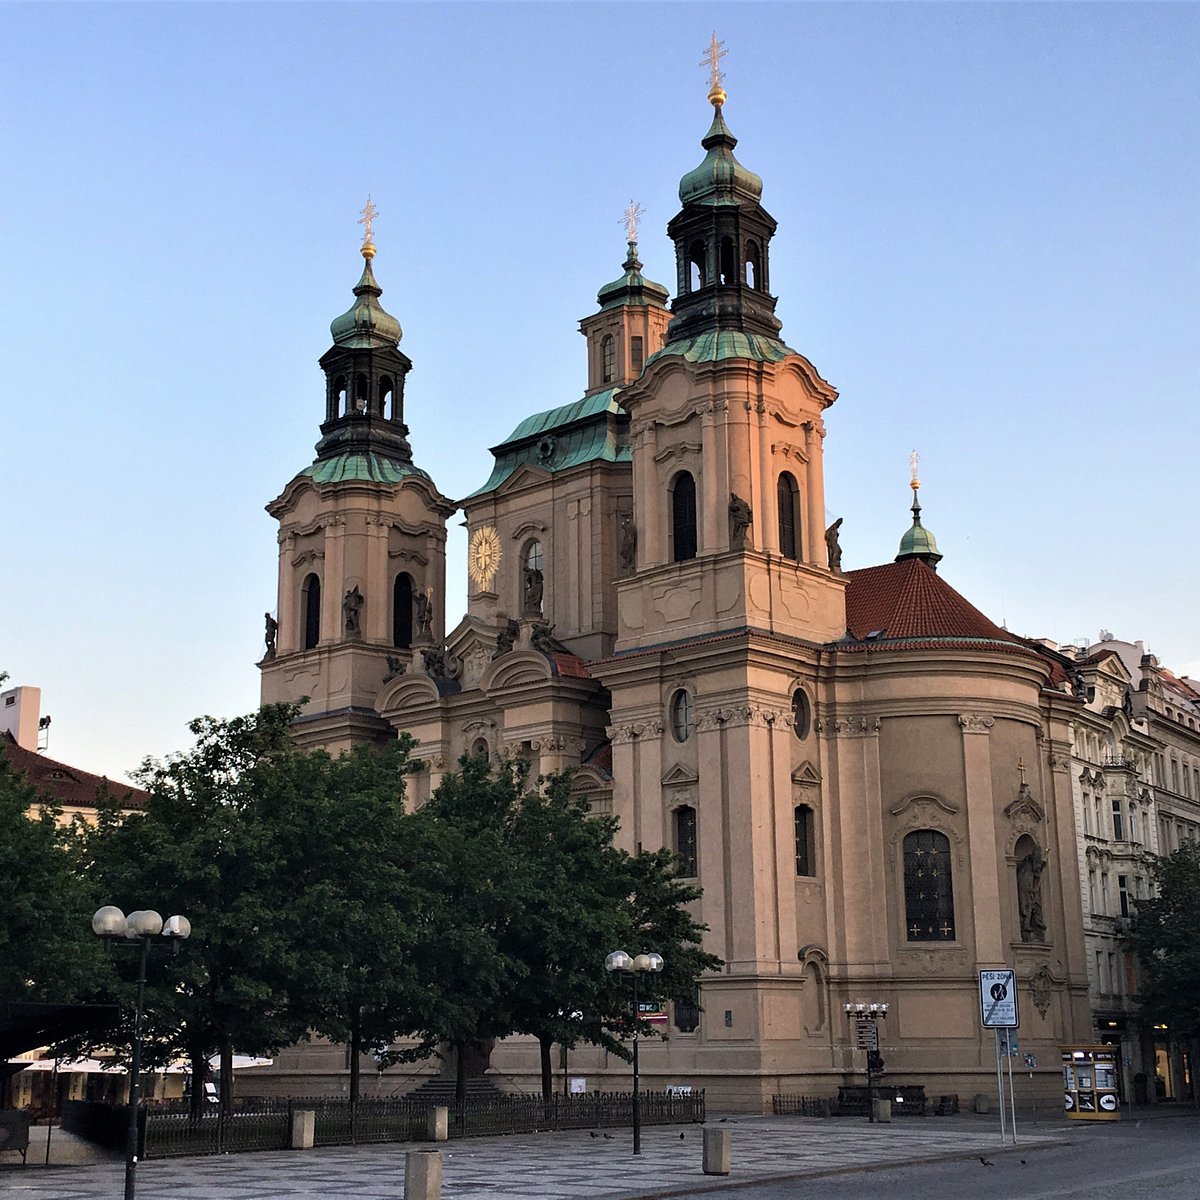 St. Nicholas Church - Tempat Wisata Favorit dan Terkenal di Praha Ceko